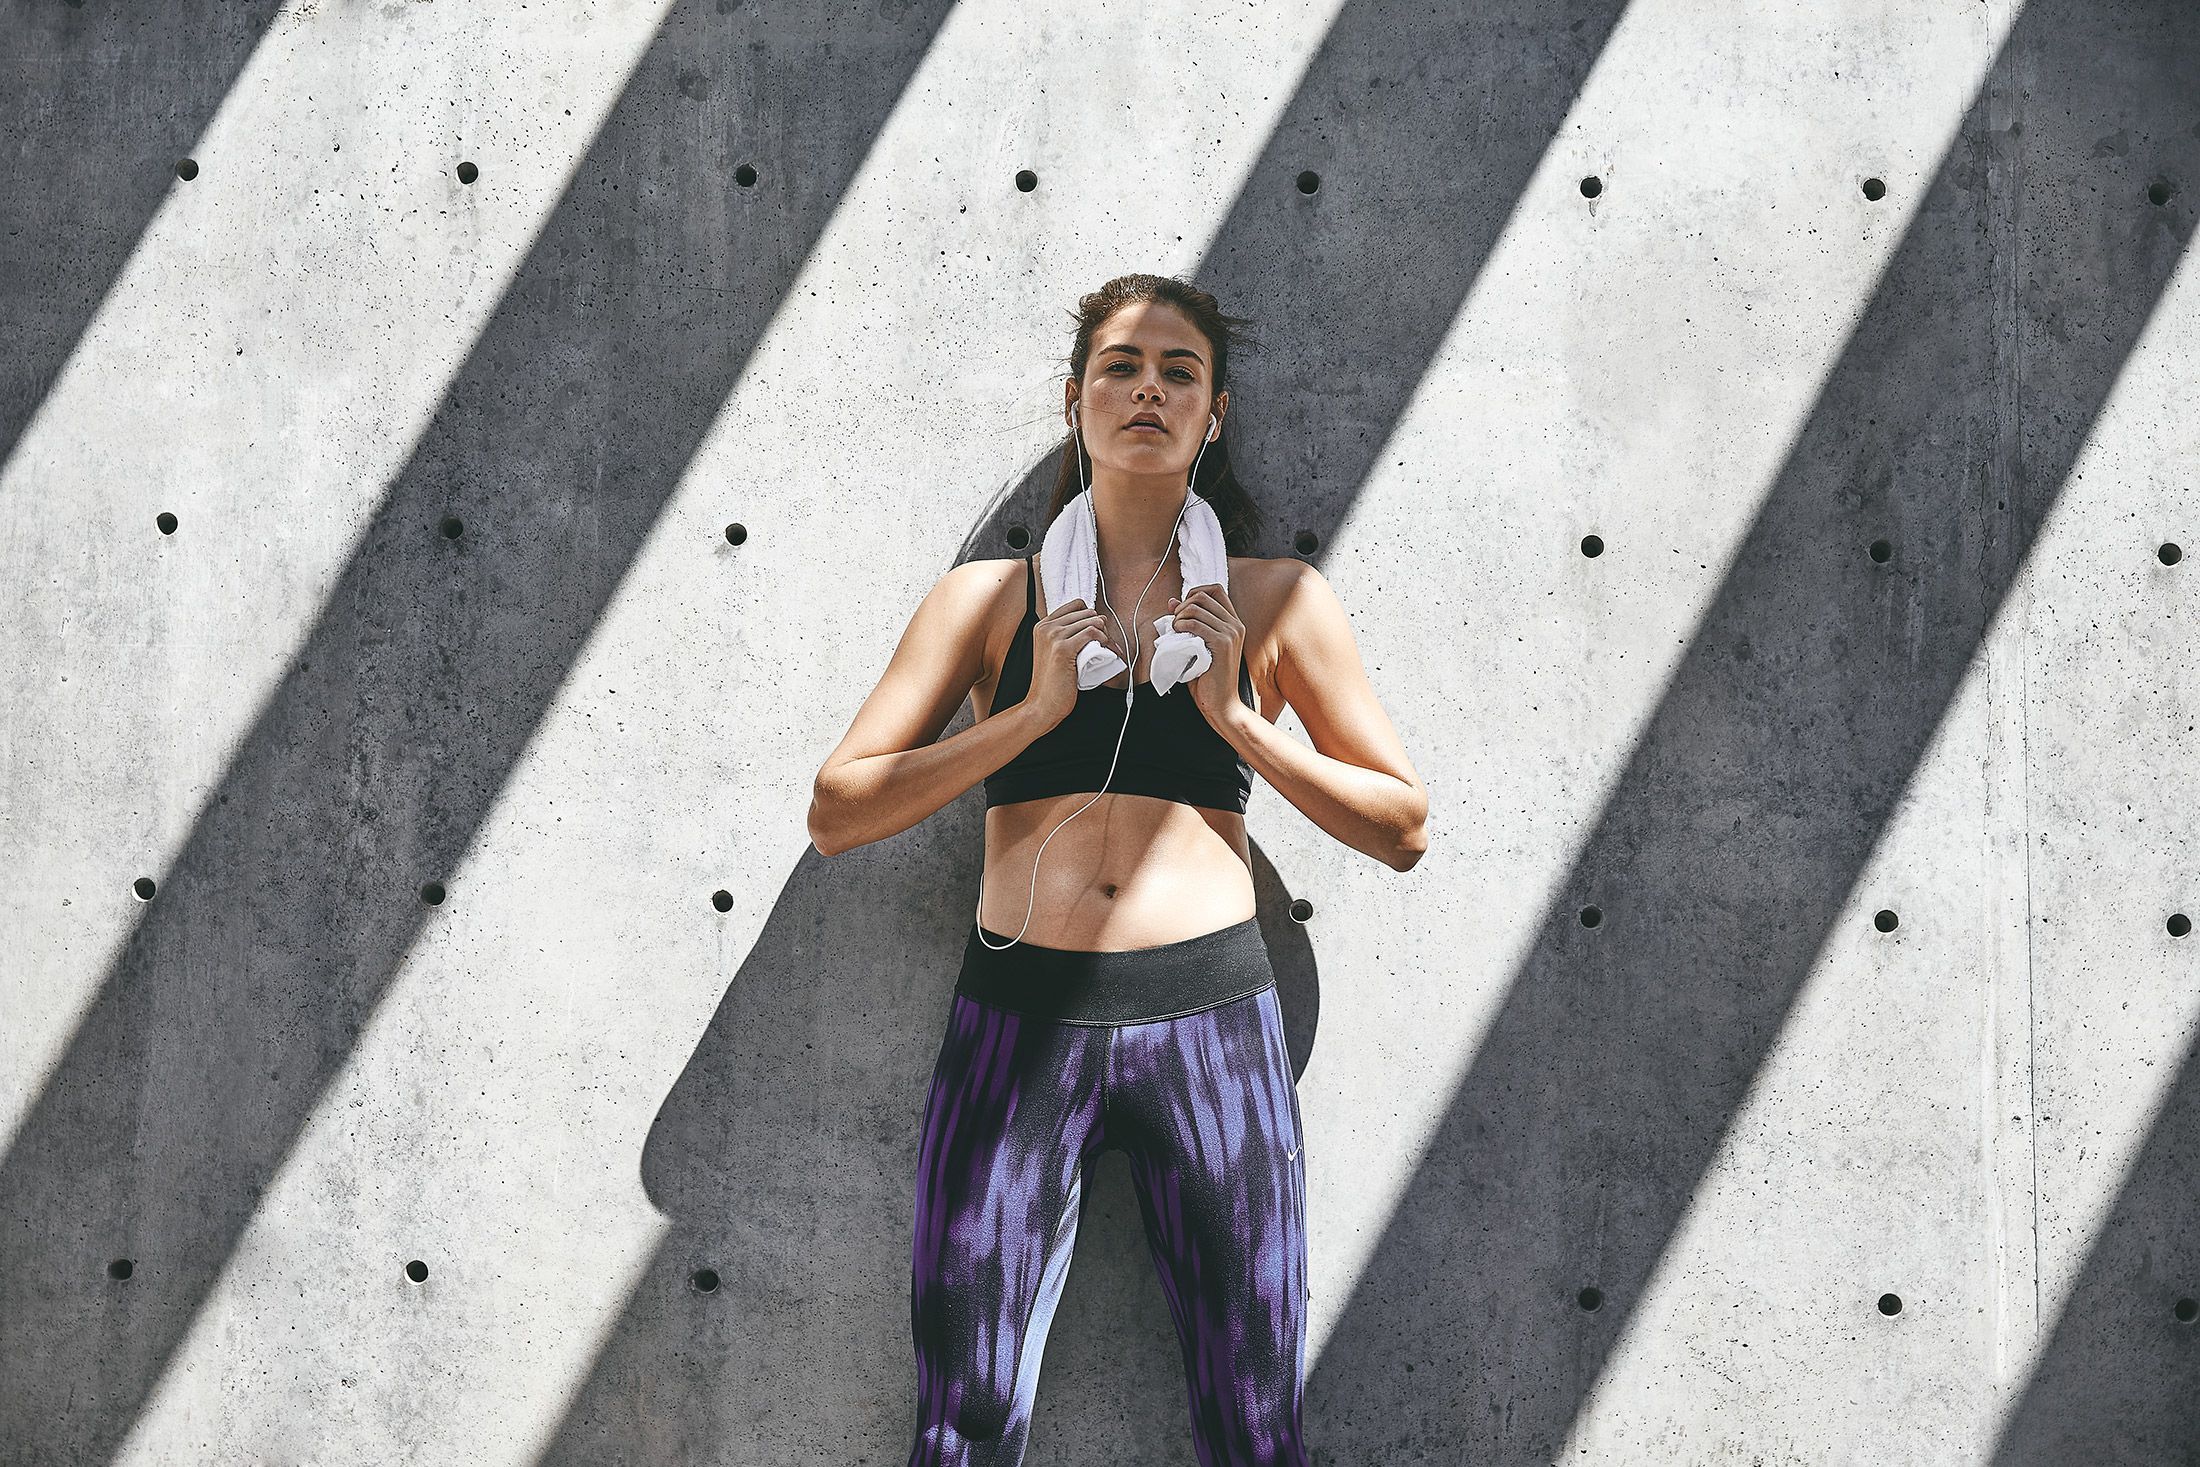 15 street fitness Photoshoot ideas